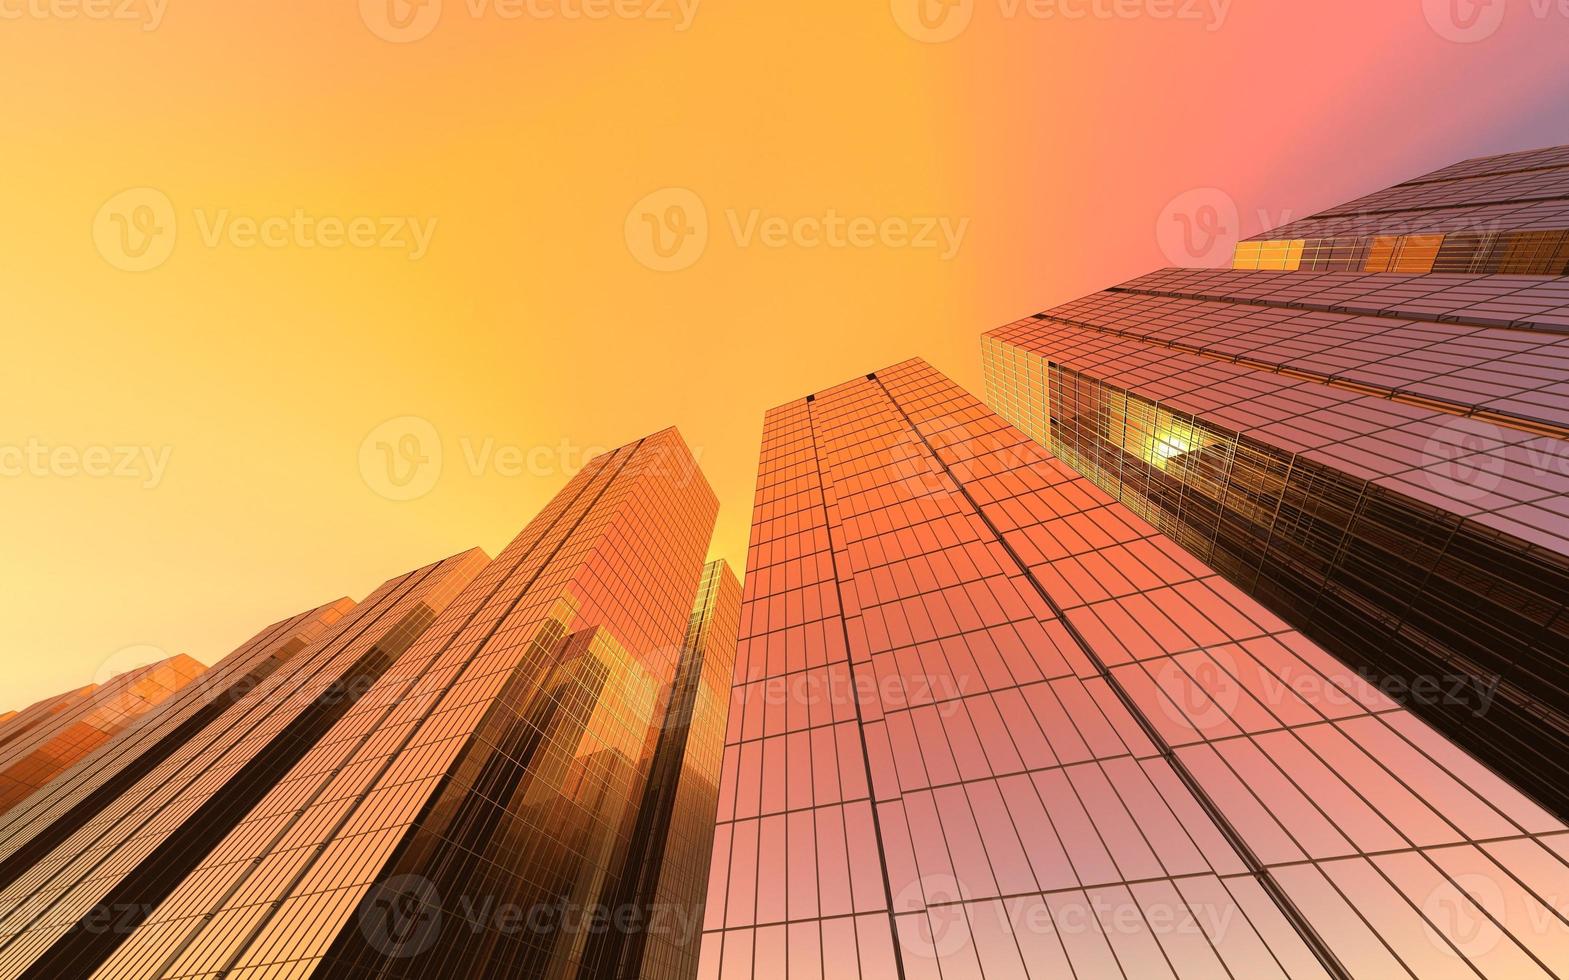 moderni grattacieli contro il cielo. illustrazione 3d sul tema del successo aziendale e della tecnologia foto